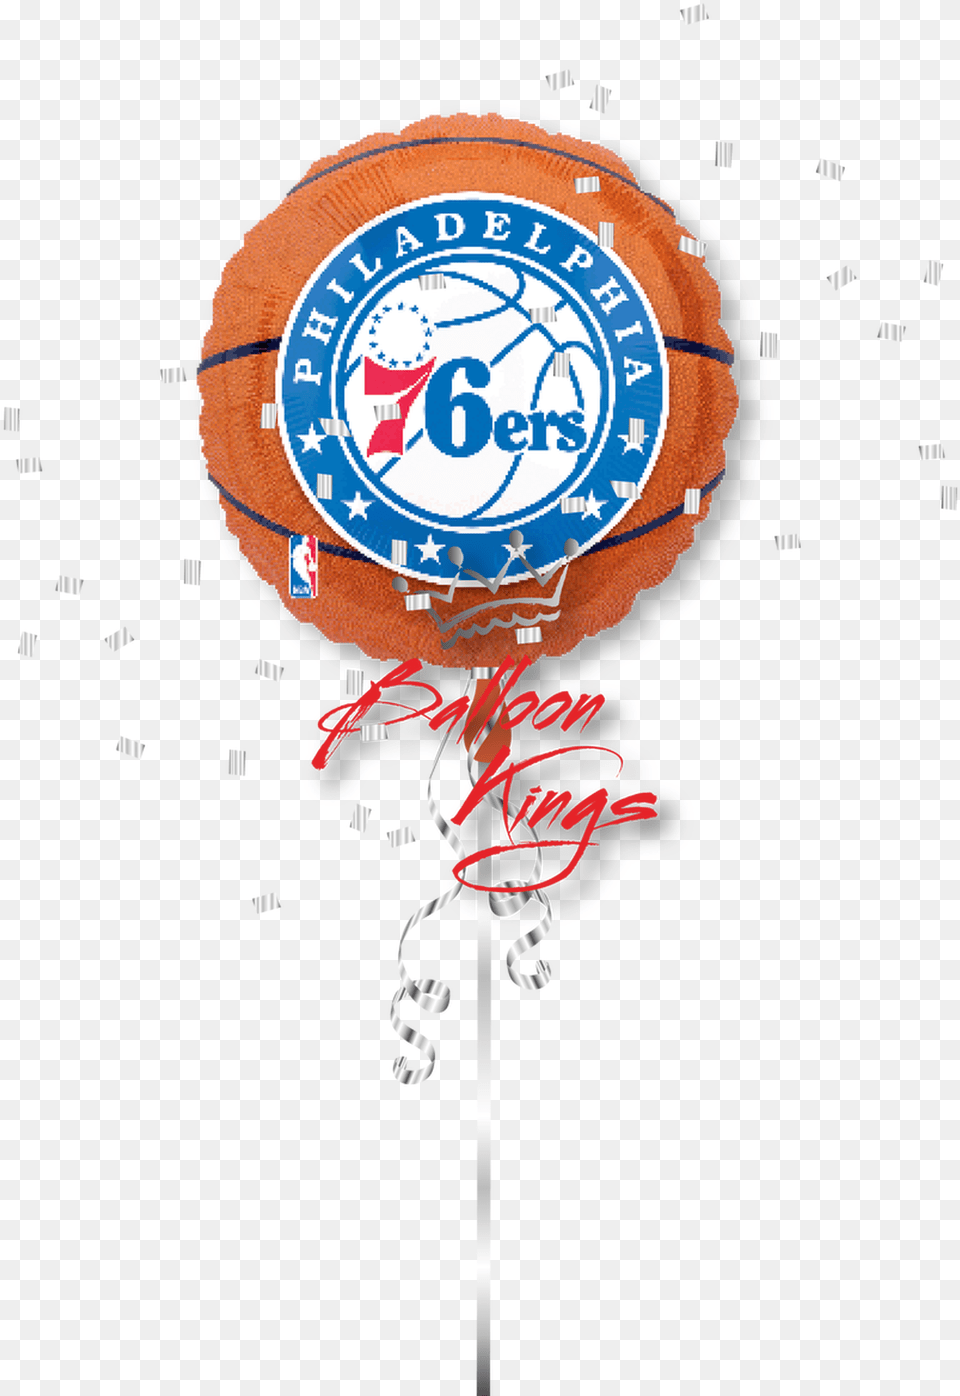 Philadelphia 76ers Basketball Ballons, Food, Sweets Png Image